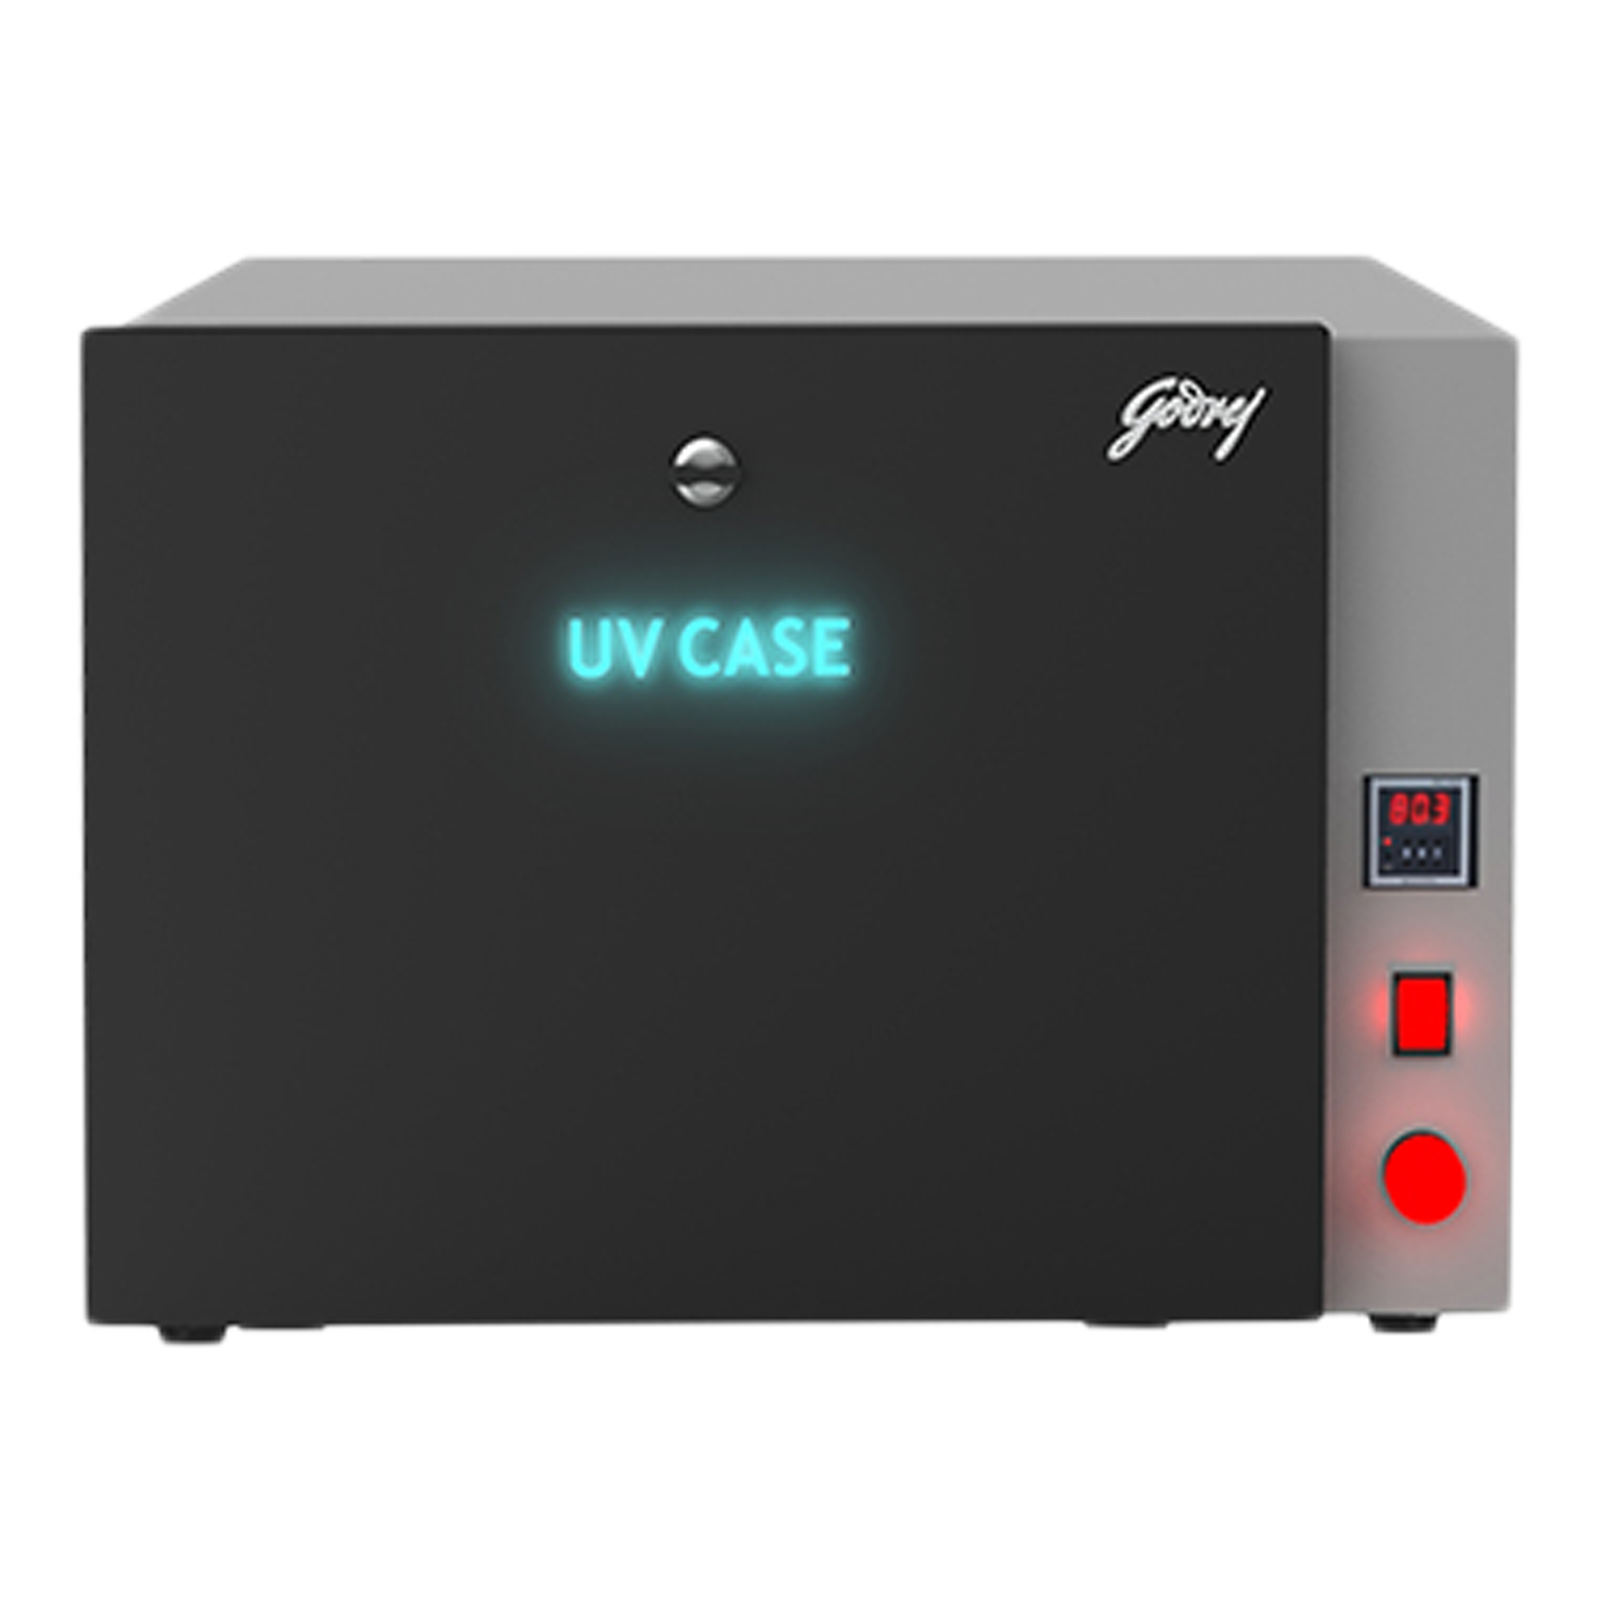 Godrej UV Case (Kills 99.9% Viruses & bacteria, 46171591DG01661, Grey)